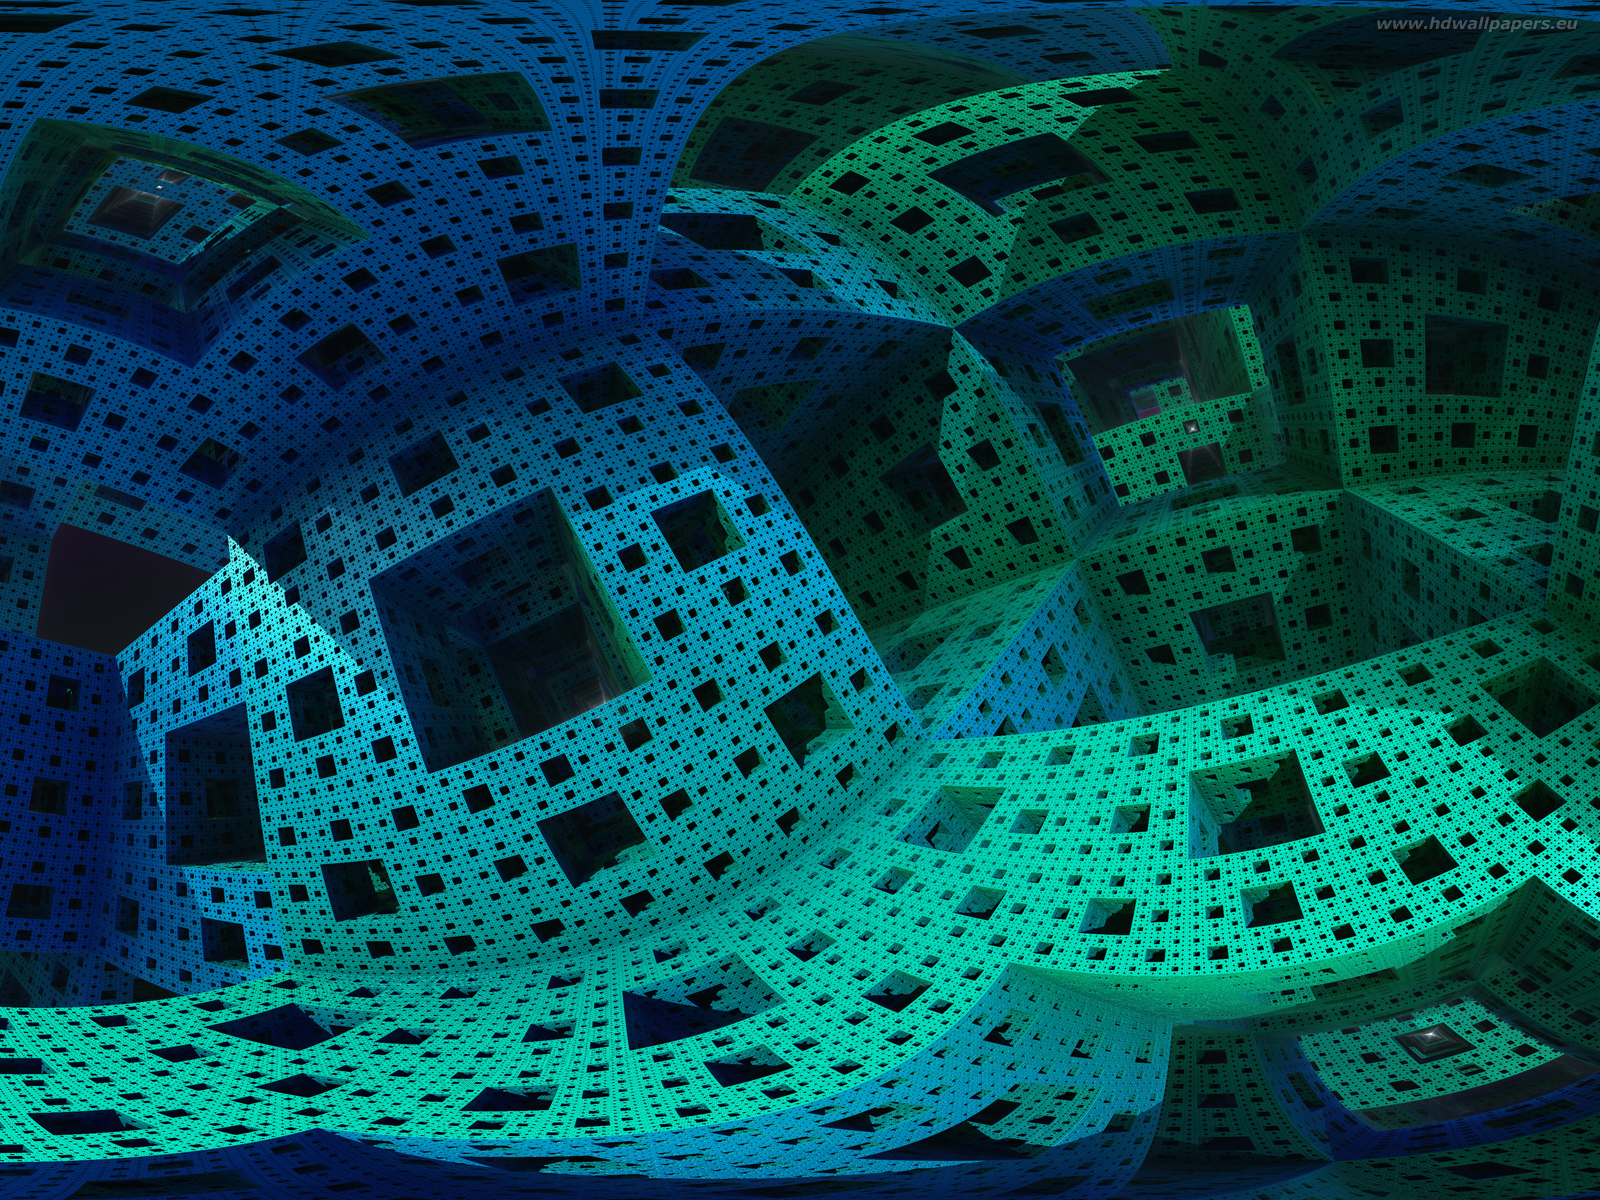 mandel_cube_3D_fractal-1600x1200